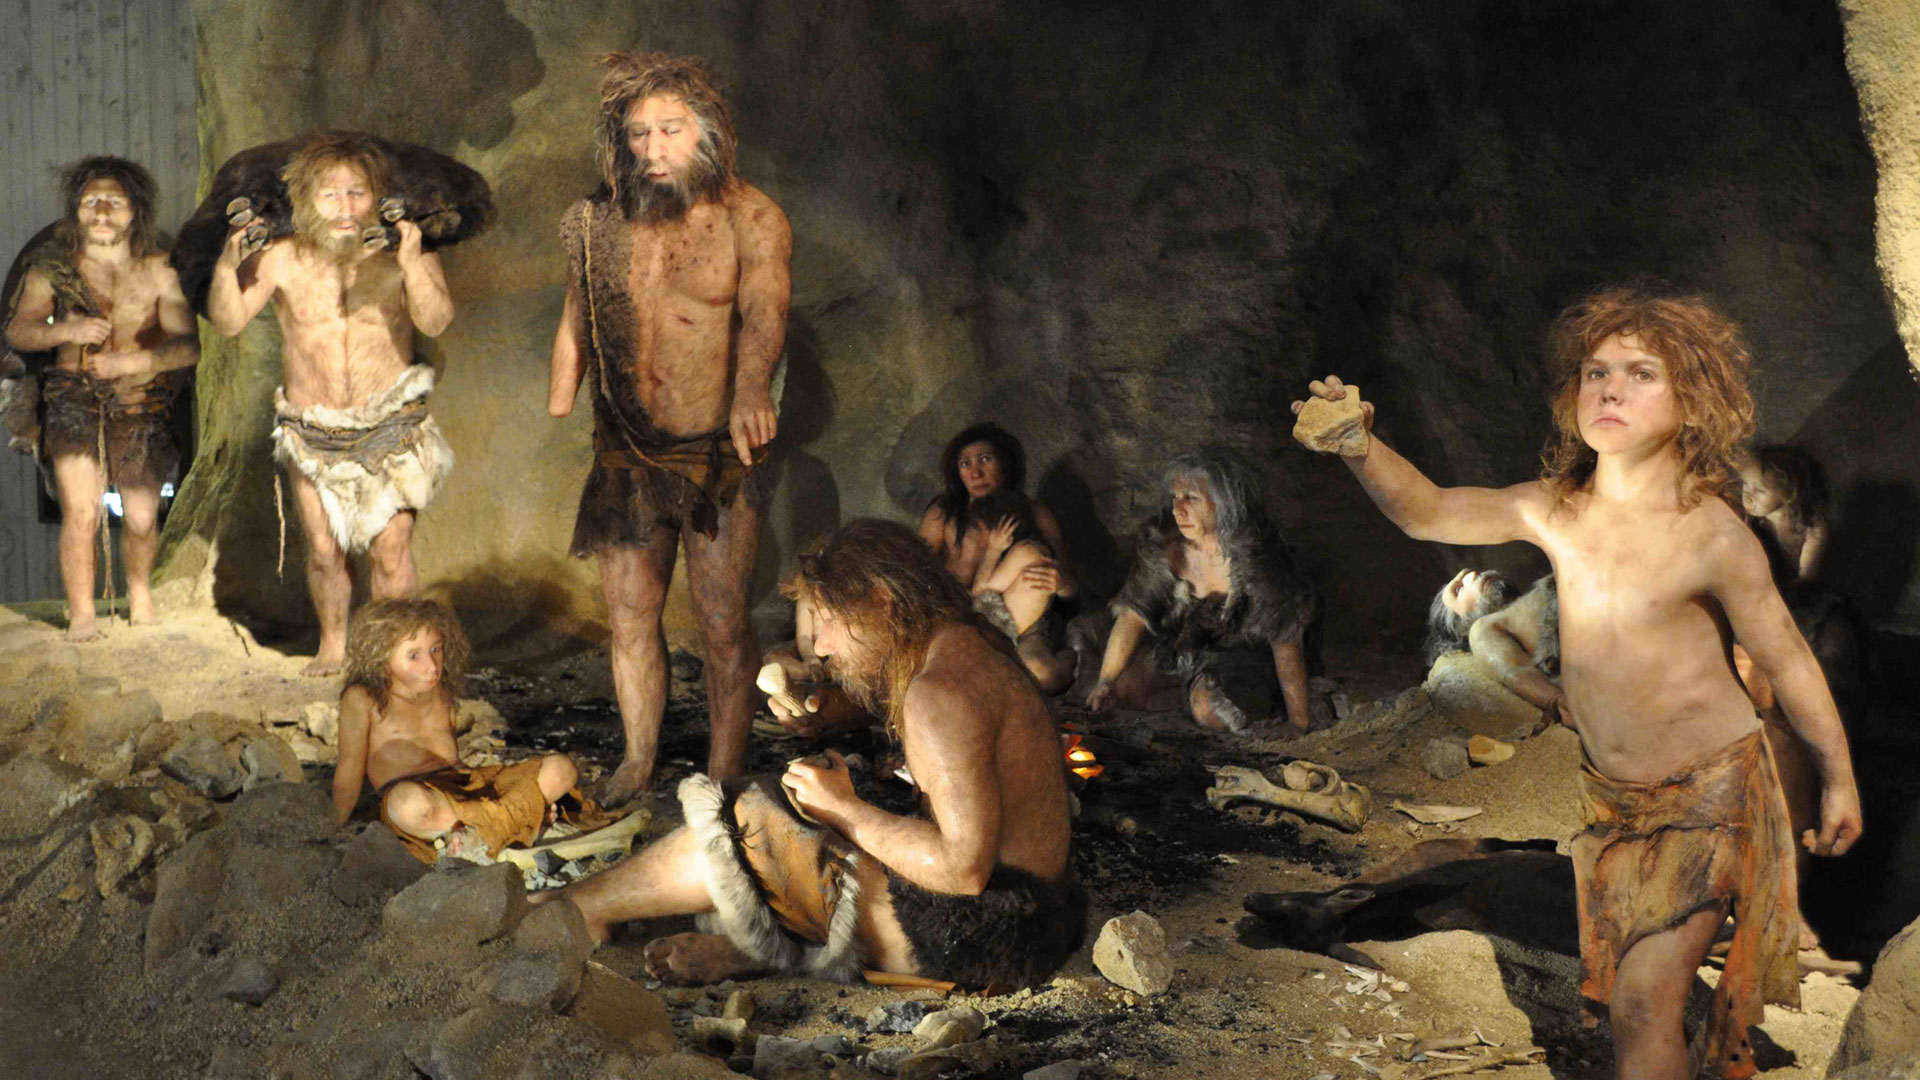 Histórico: se descubrió la primera familia neandertal en una cueva en Siberia 